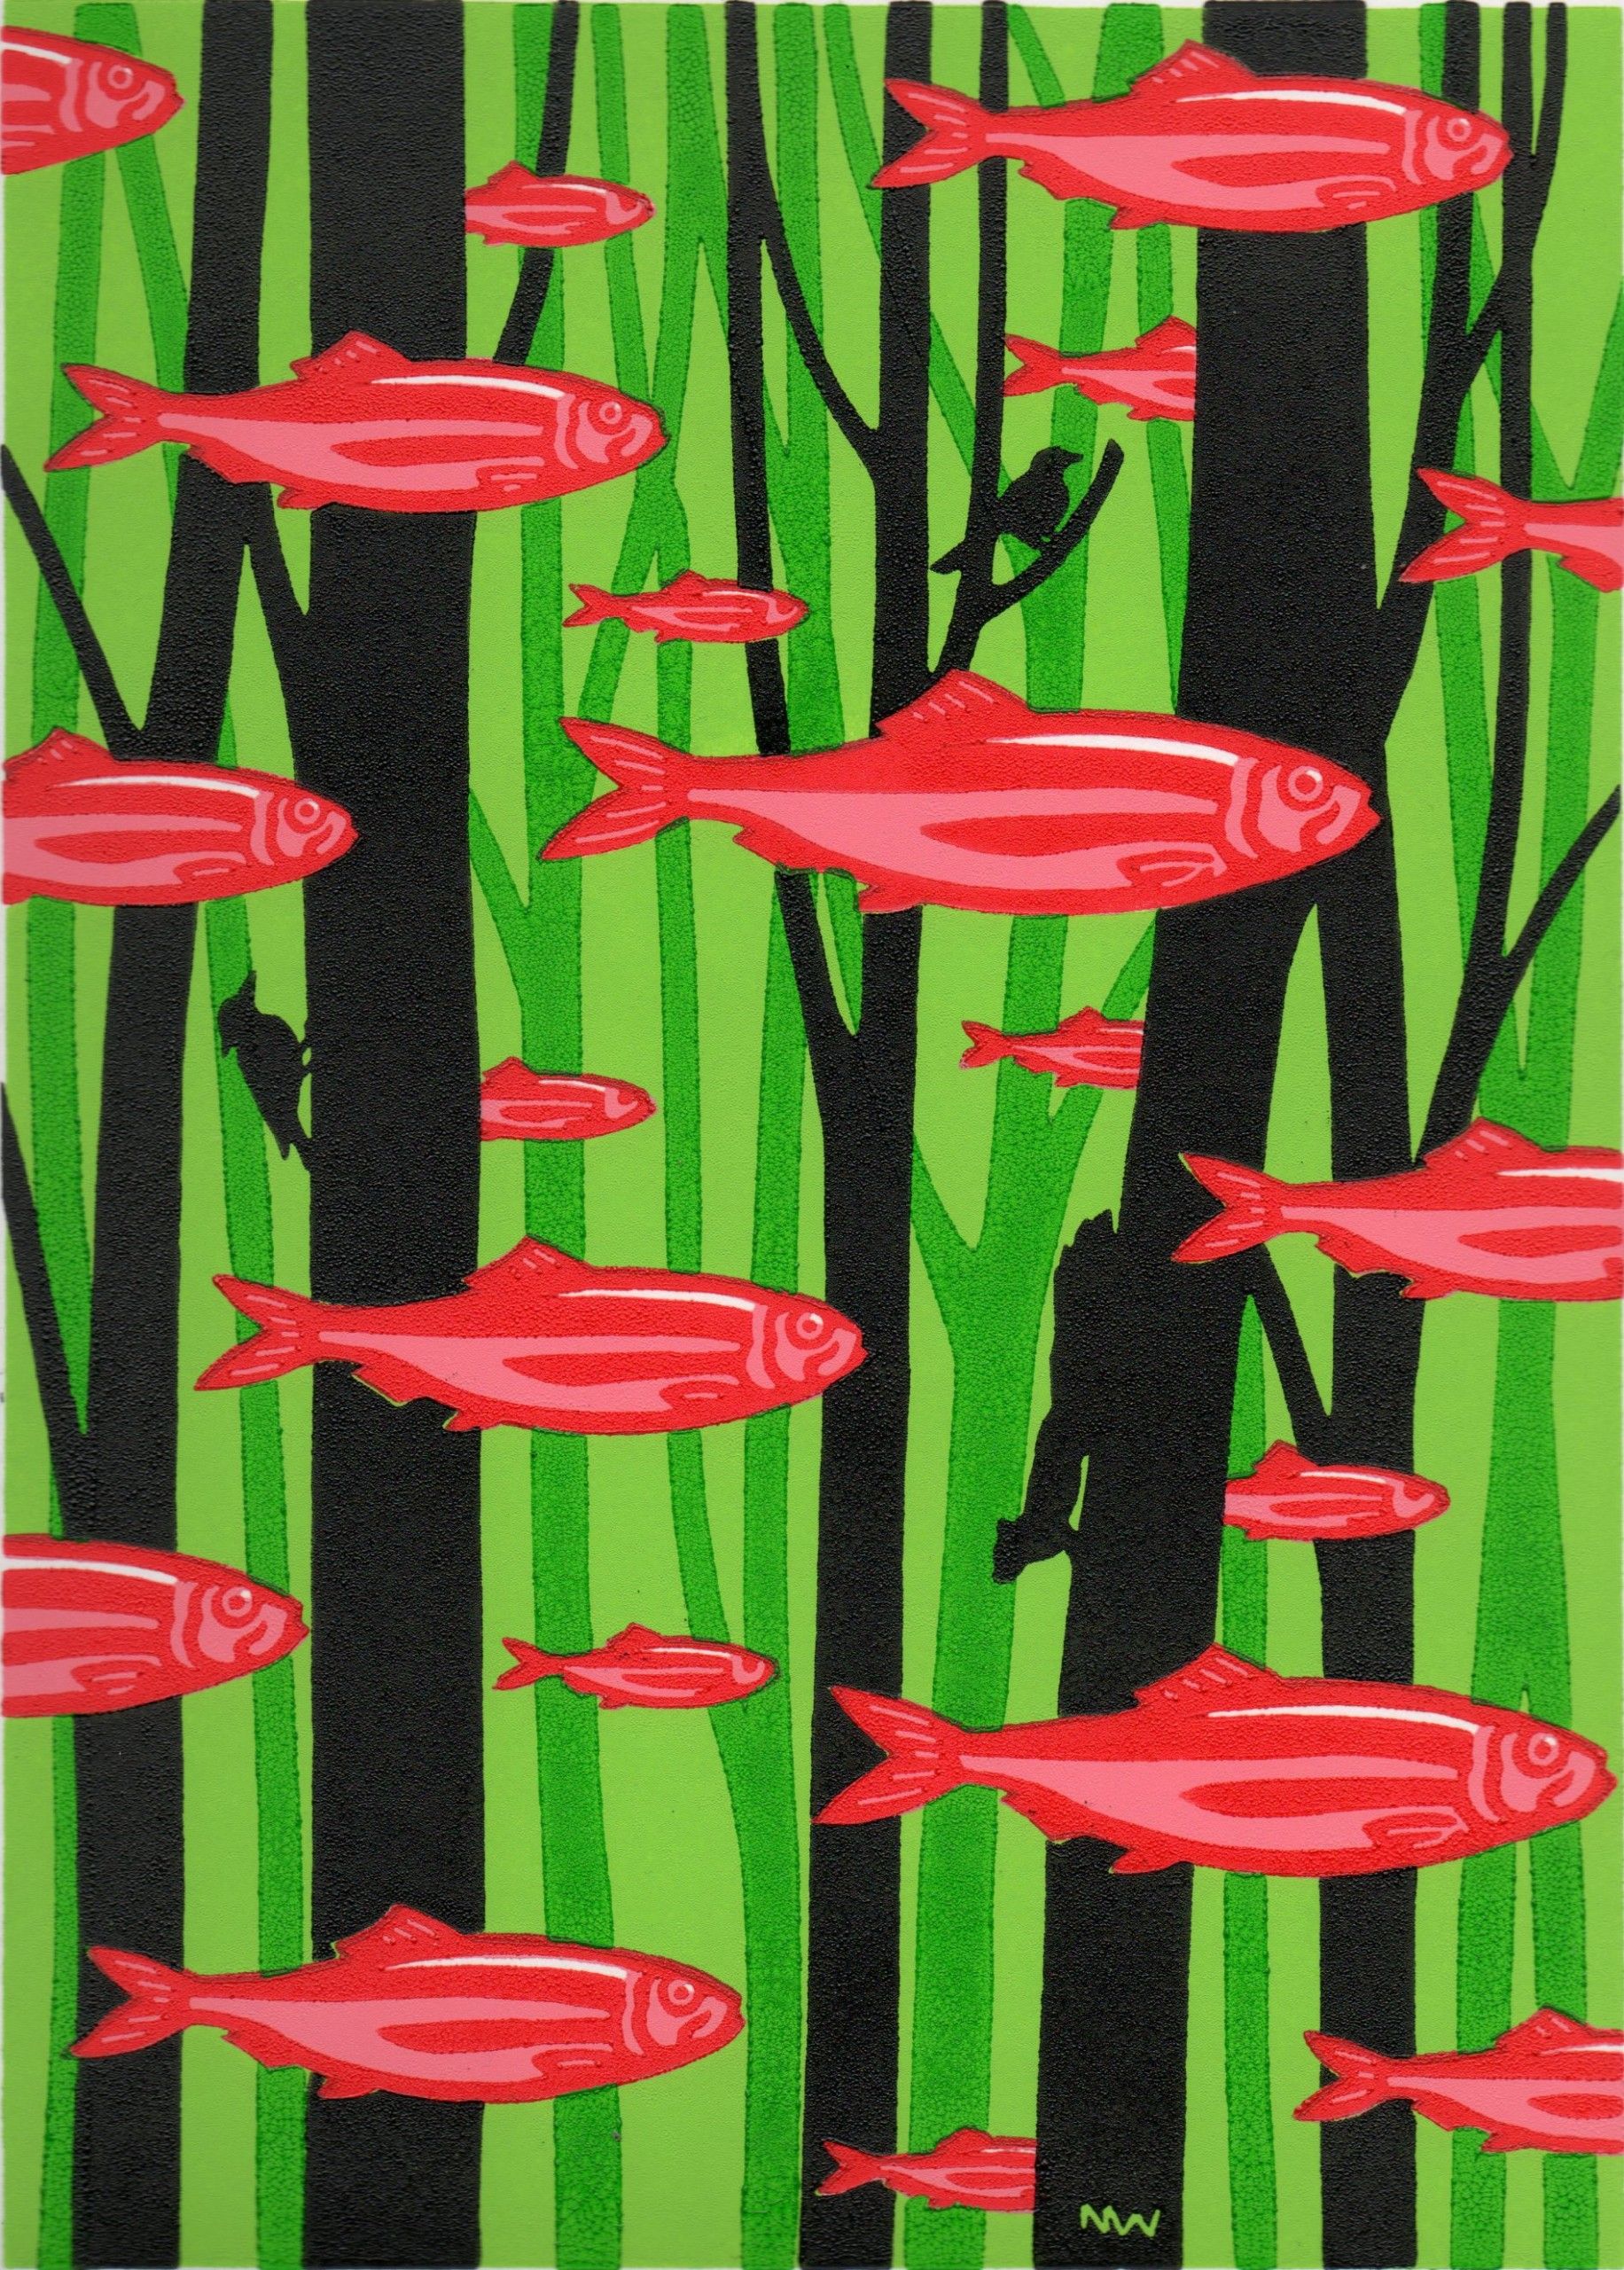 Red Herrings Swim In The Wood by Nick Wonham